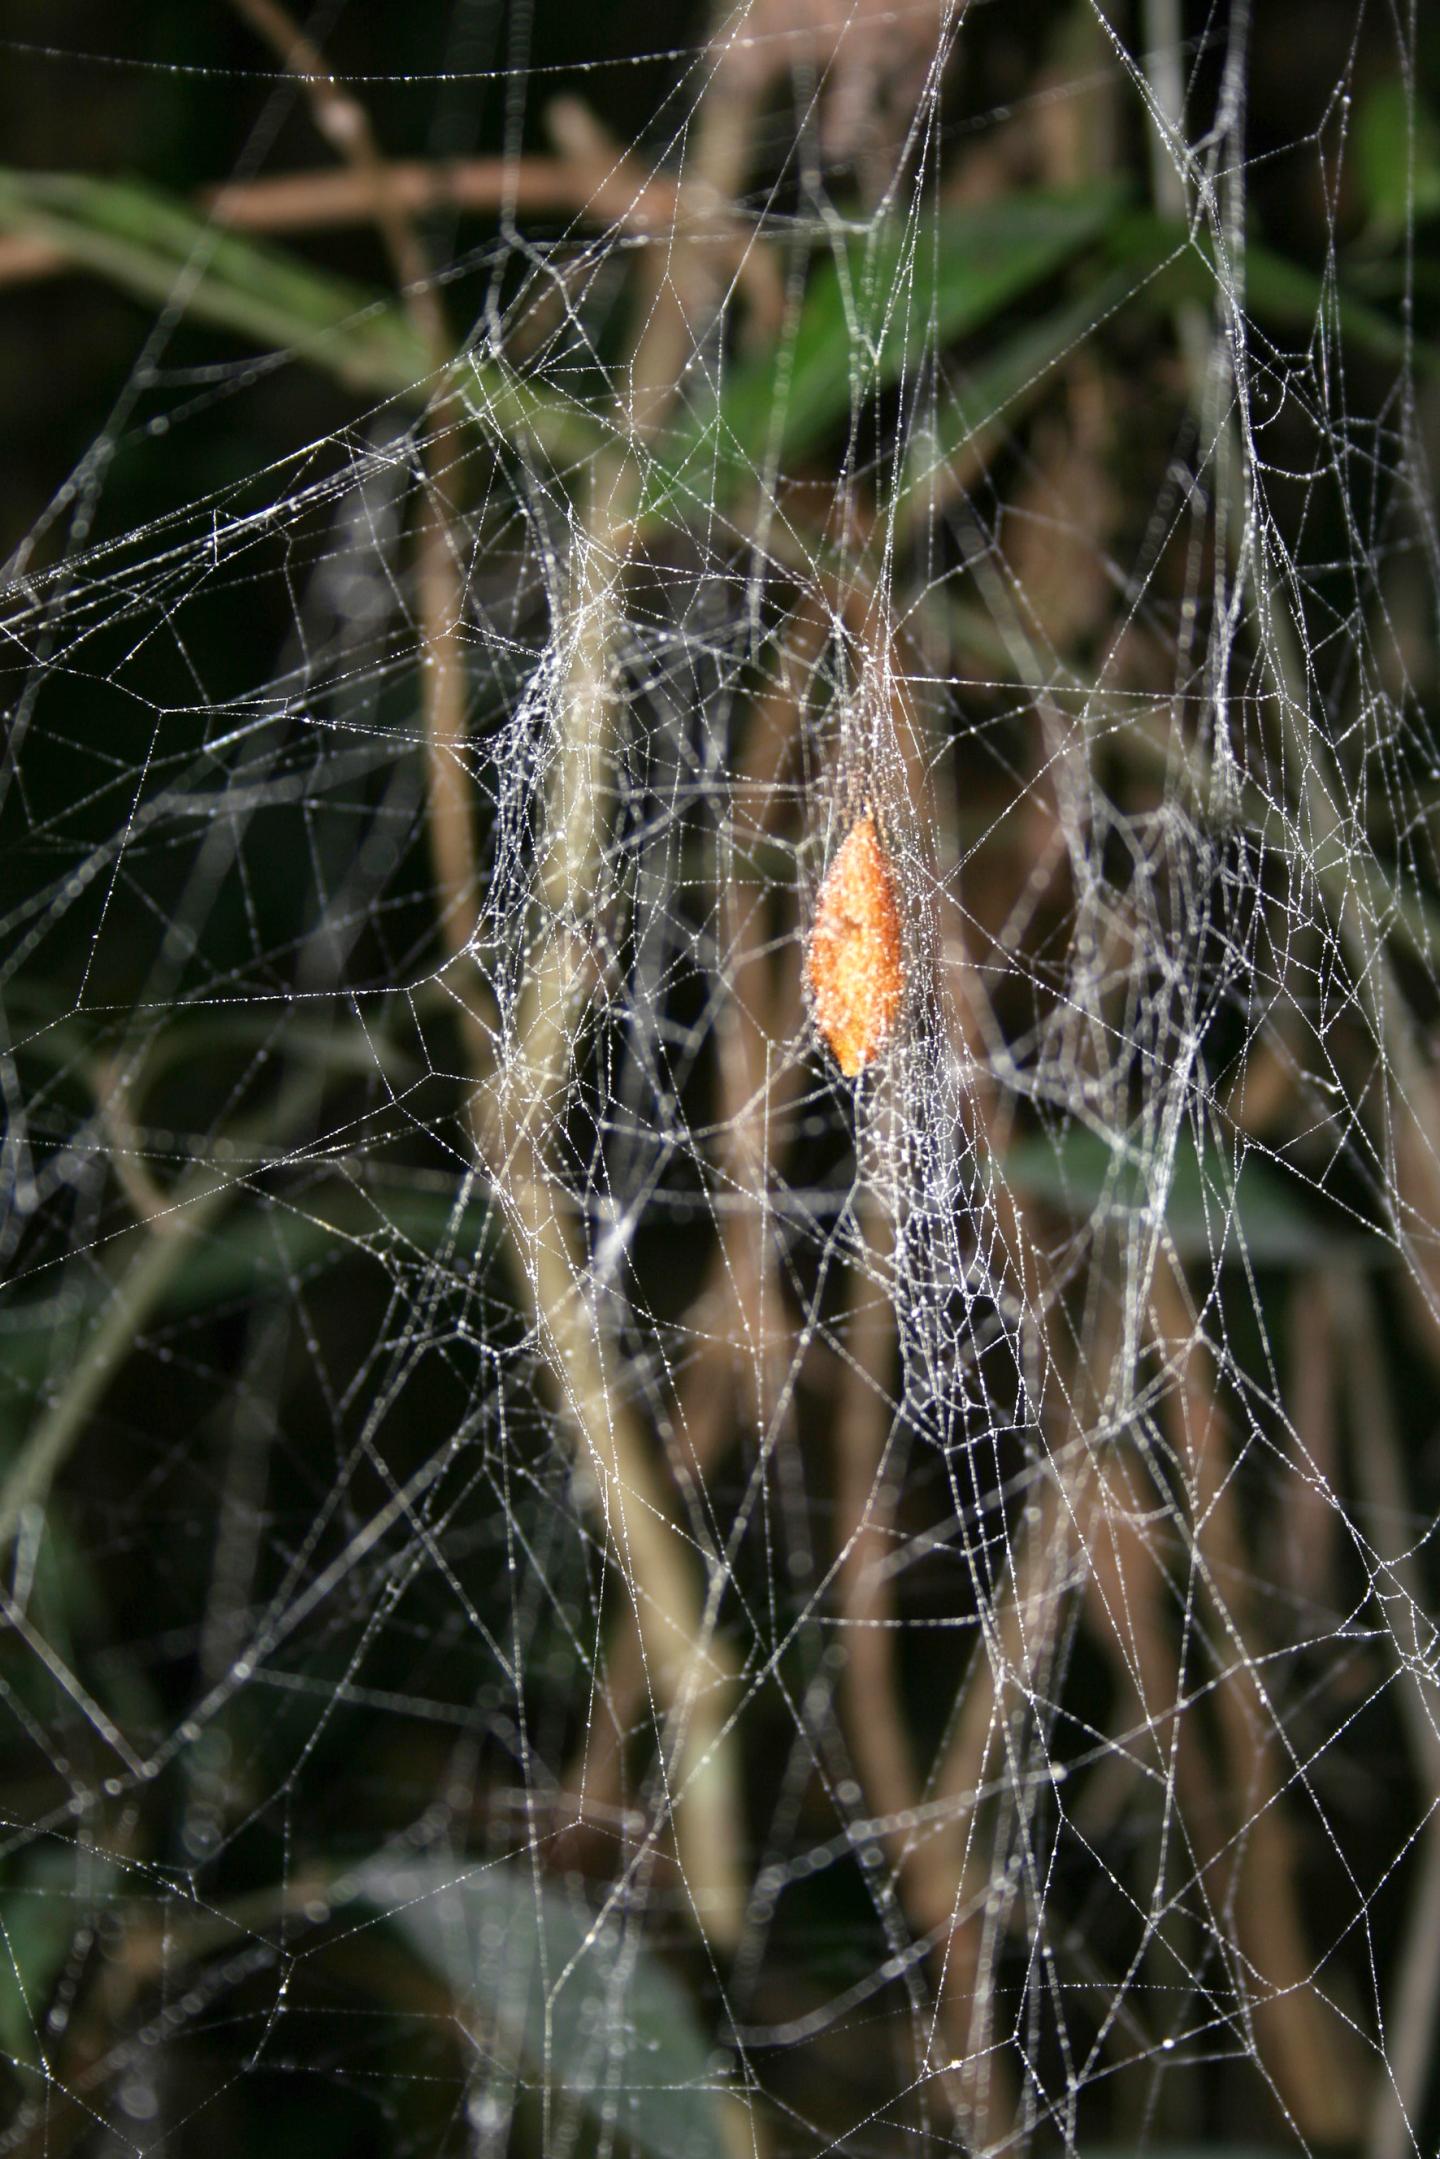 Cocoon Web of <em>Nephila clavipes</em> Attacked by <em>Hymenoepimecia bicolor</em>